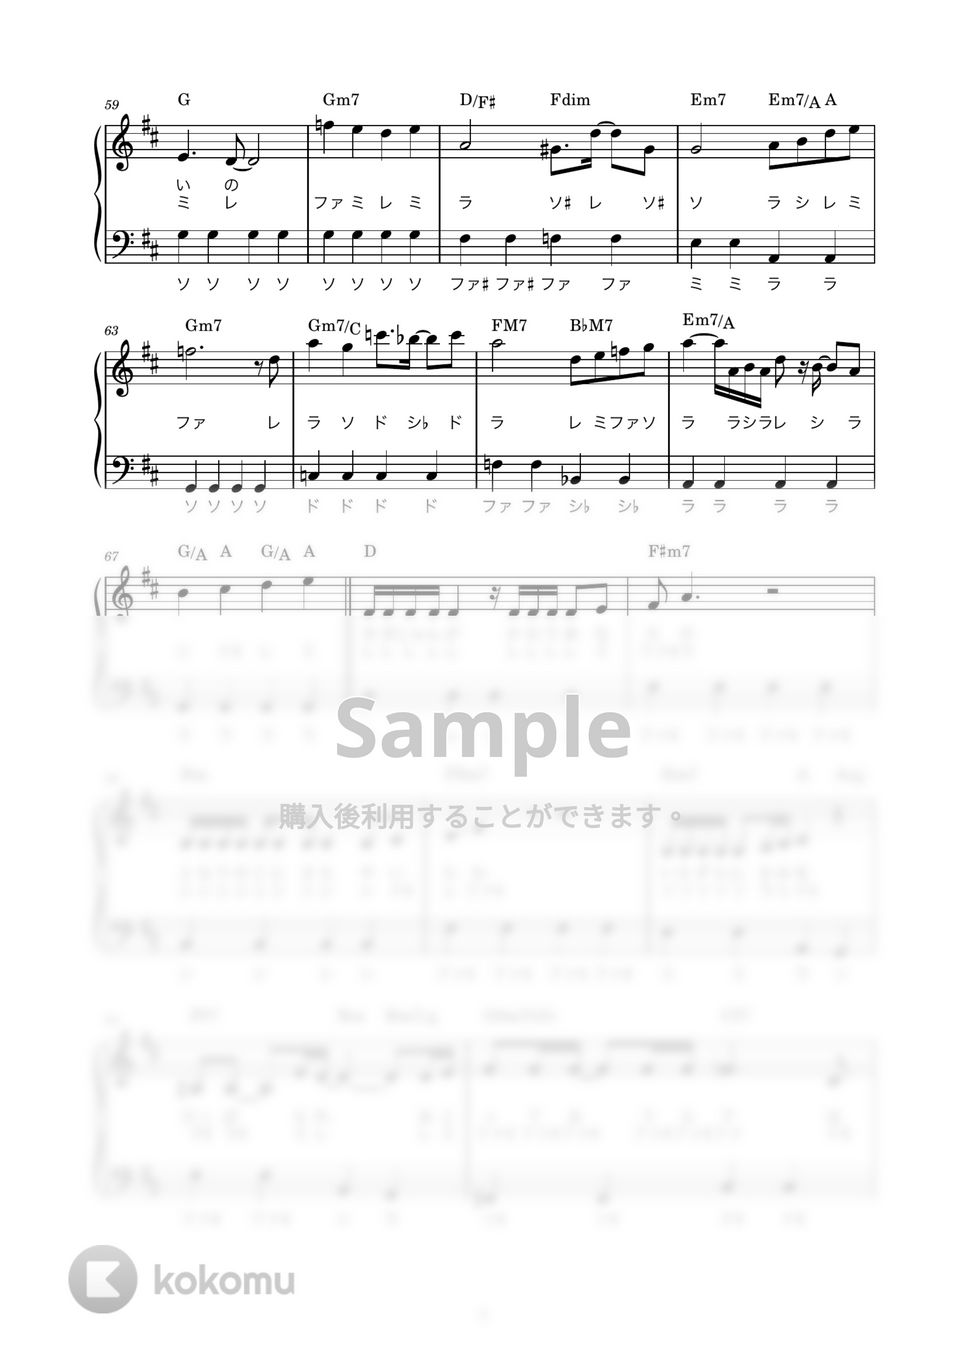 斉藤由貴 - 卒業 (かんたん / 歌詞付き / ドレミ付き / 初心者) by piano.tokyo